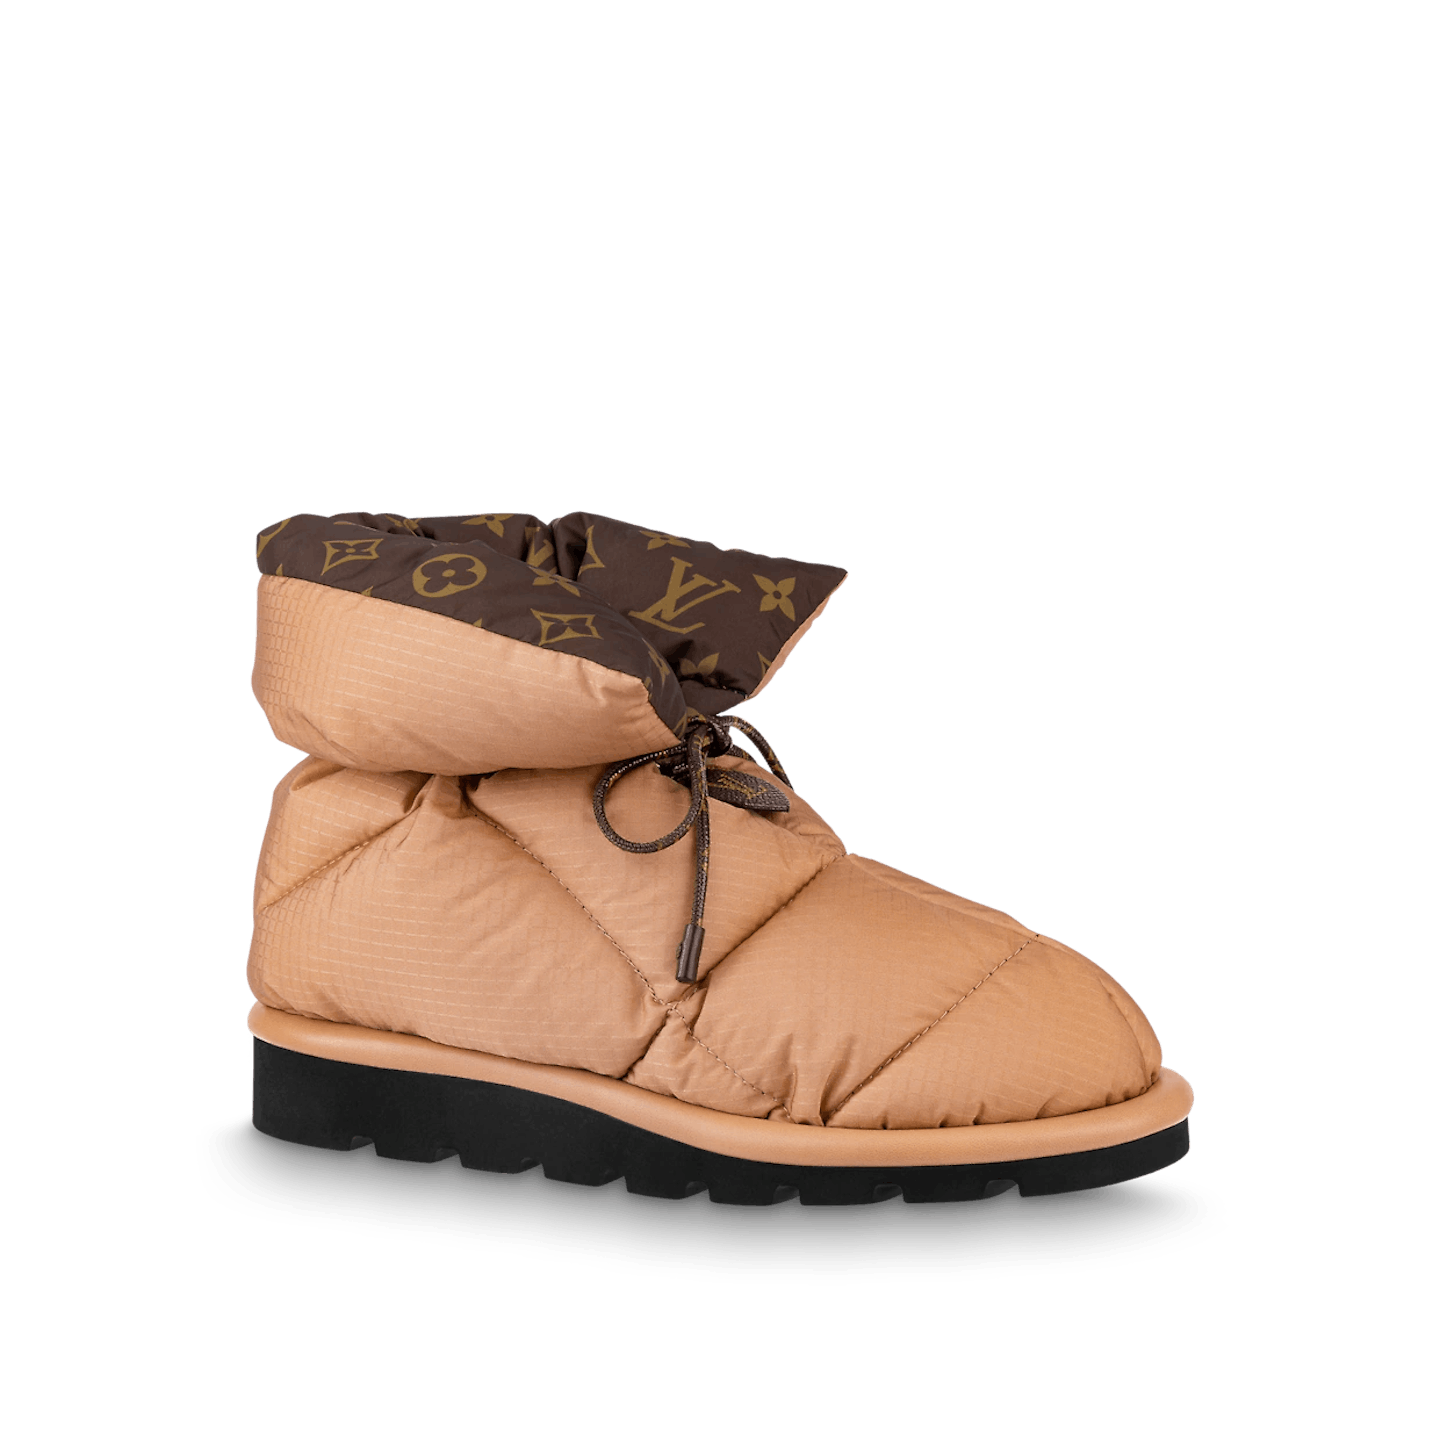 Louis Vuitton 2021 Pillow Comfort Rain Boots